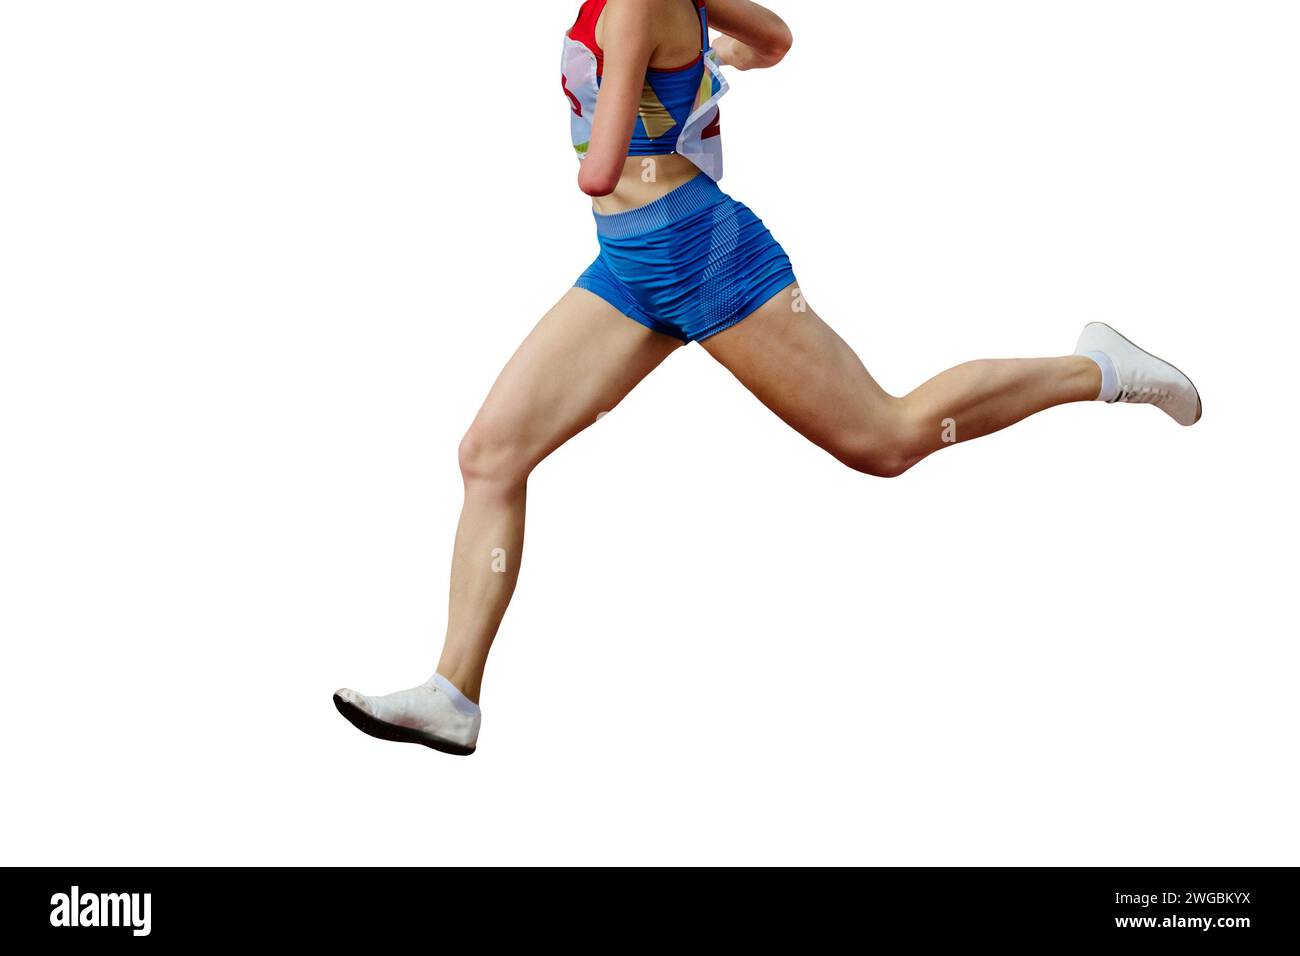 atleta femminile nella corsa, che mostra forza e velocità, non scoraggiata dall'assenza dell'avambraccio sinistro Foto Stock